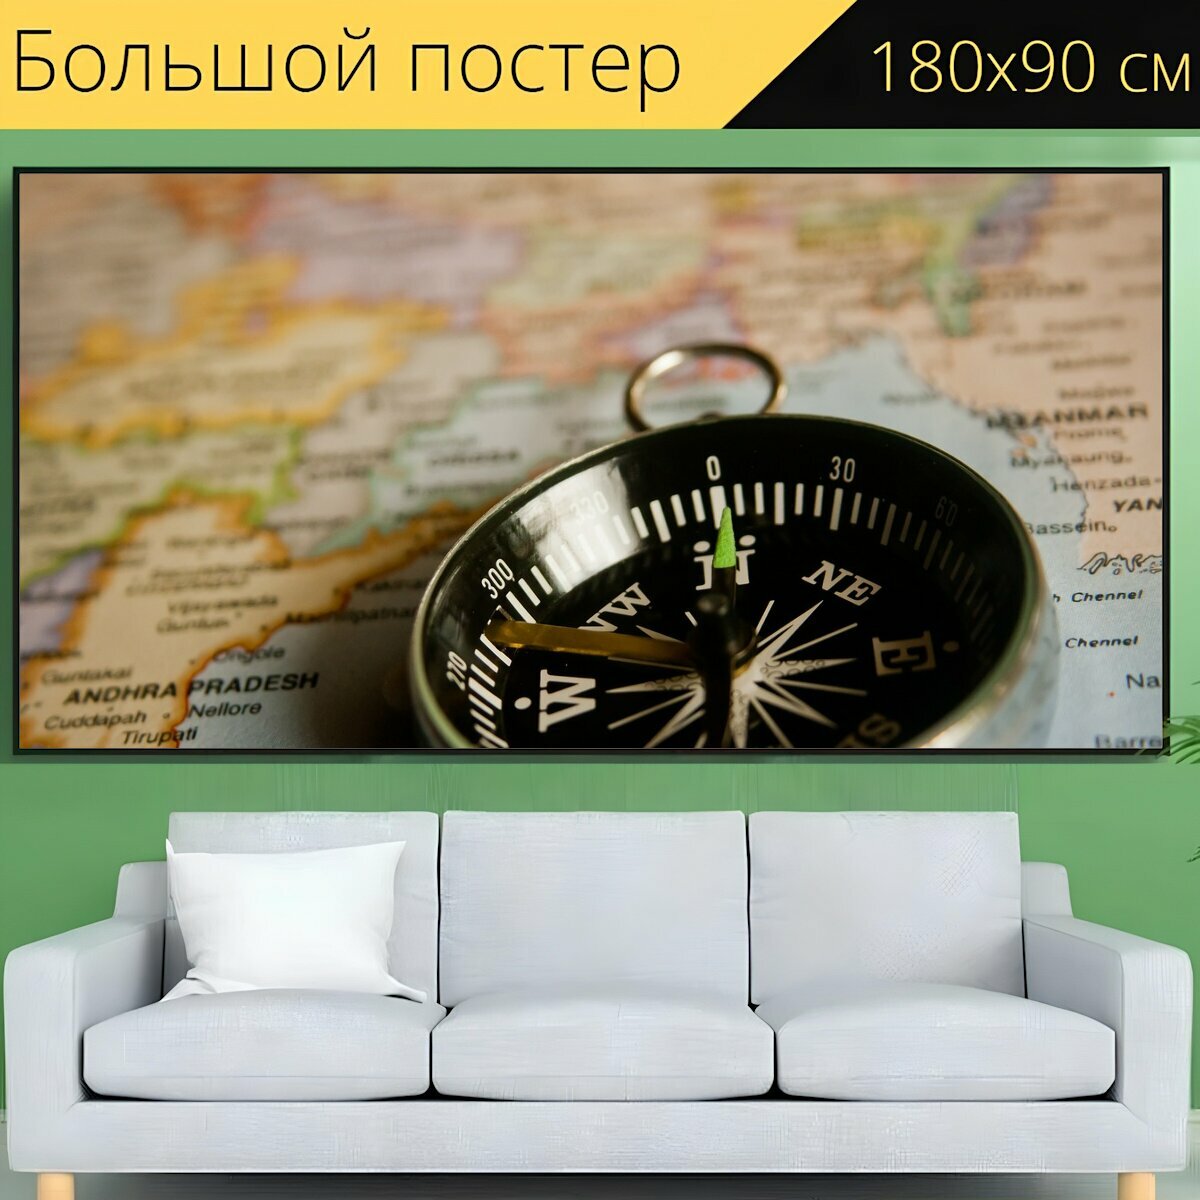 Большой постер "Компас, навигация, карта" 180 x 90 см. для интерьера